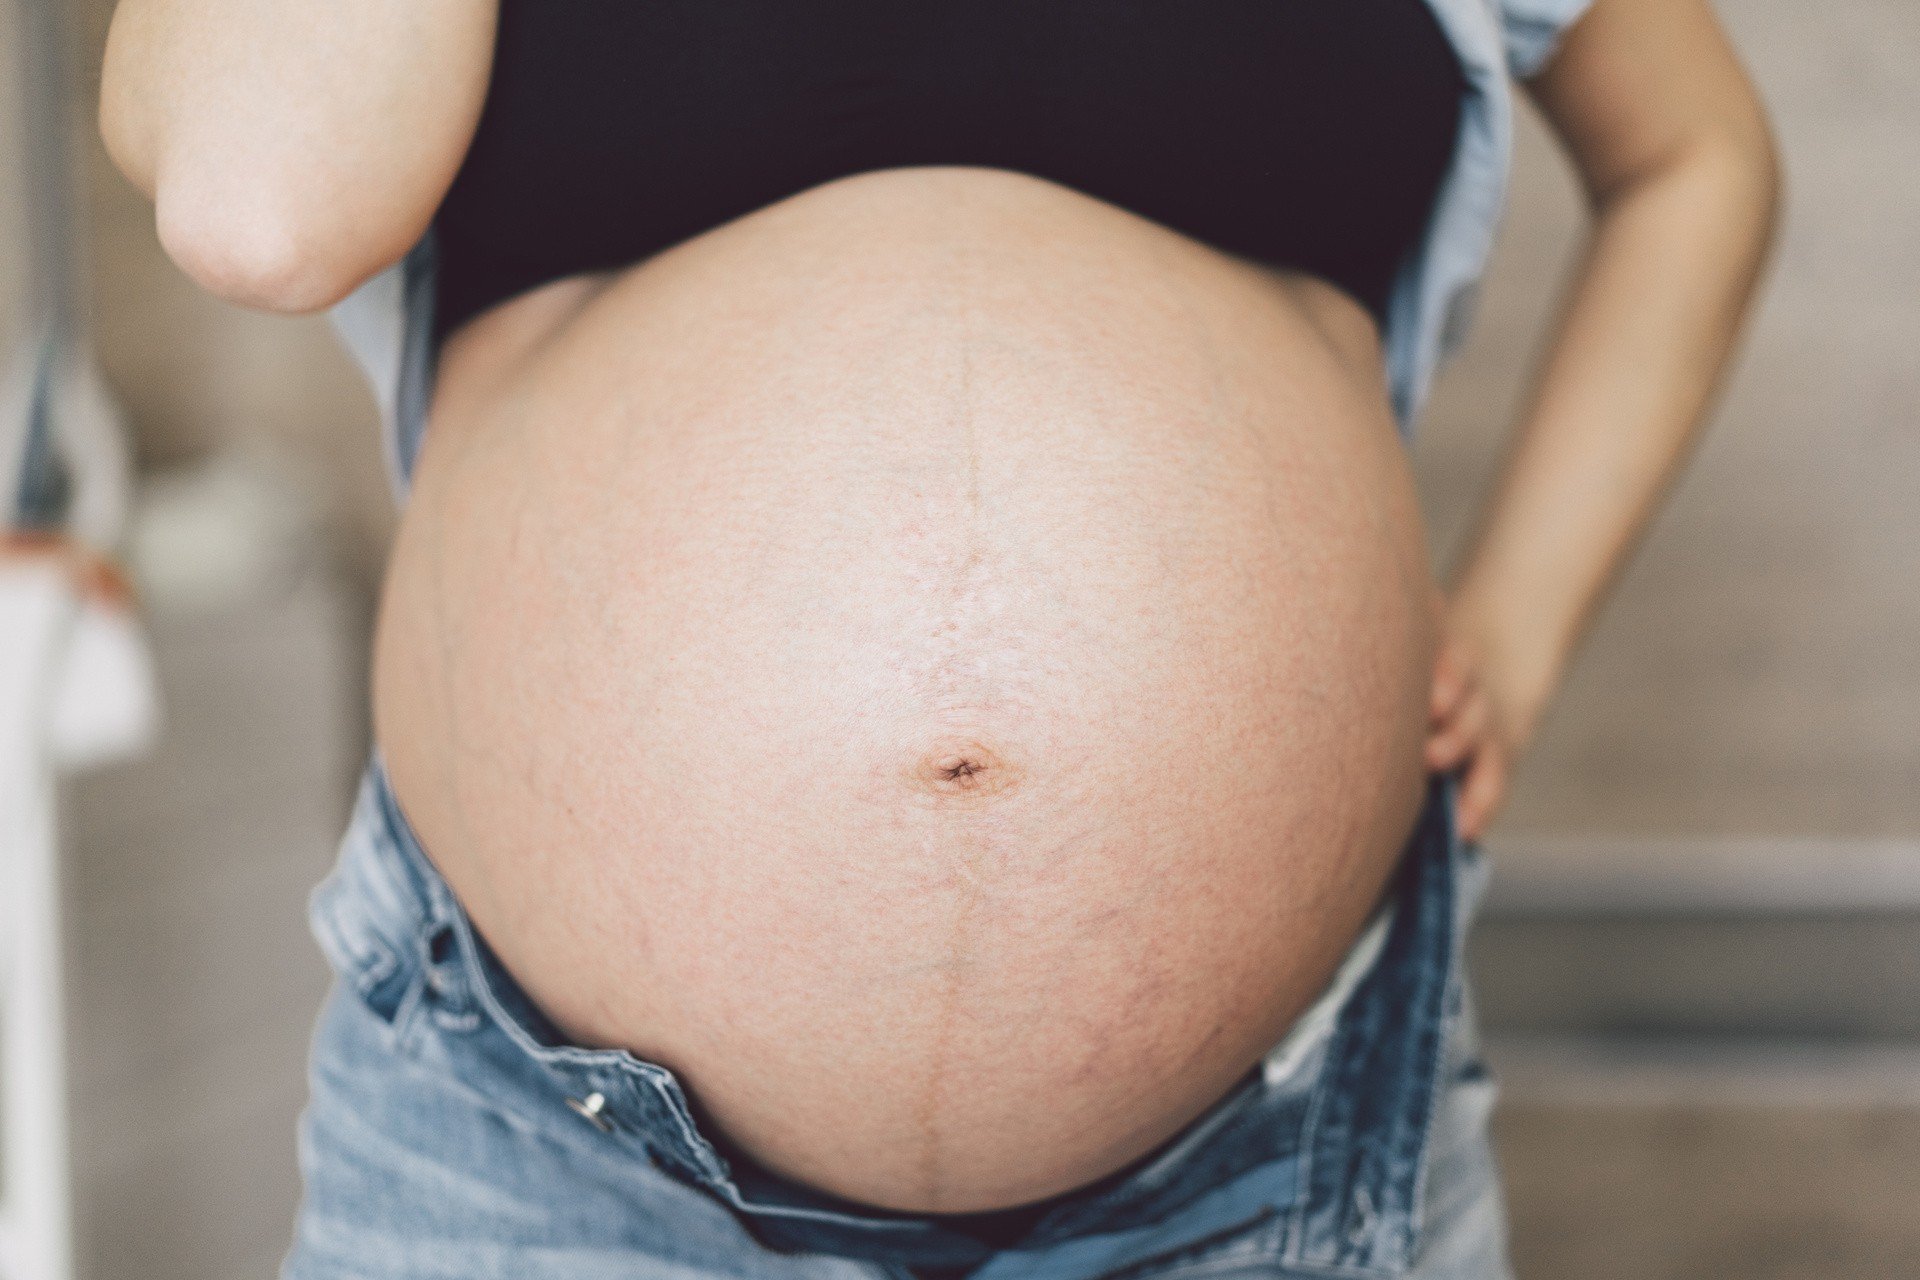 Linea negra w ciąży – czym jest i kiedy pojawia się ciemna linia na brzuchu  w ciąży? Sprawdź, czy można ją usunąć i kiedy znika | Strona Kobiet